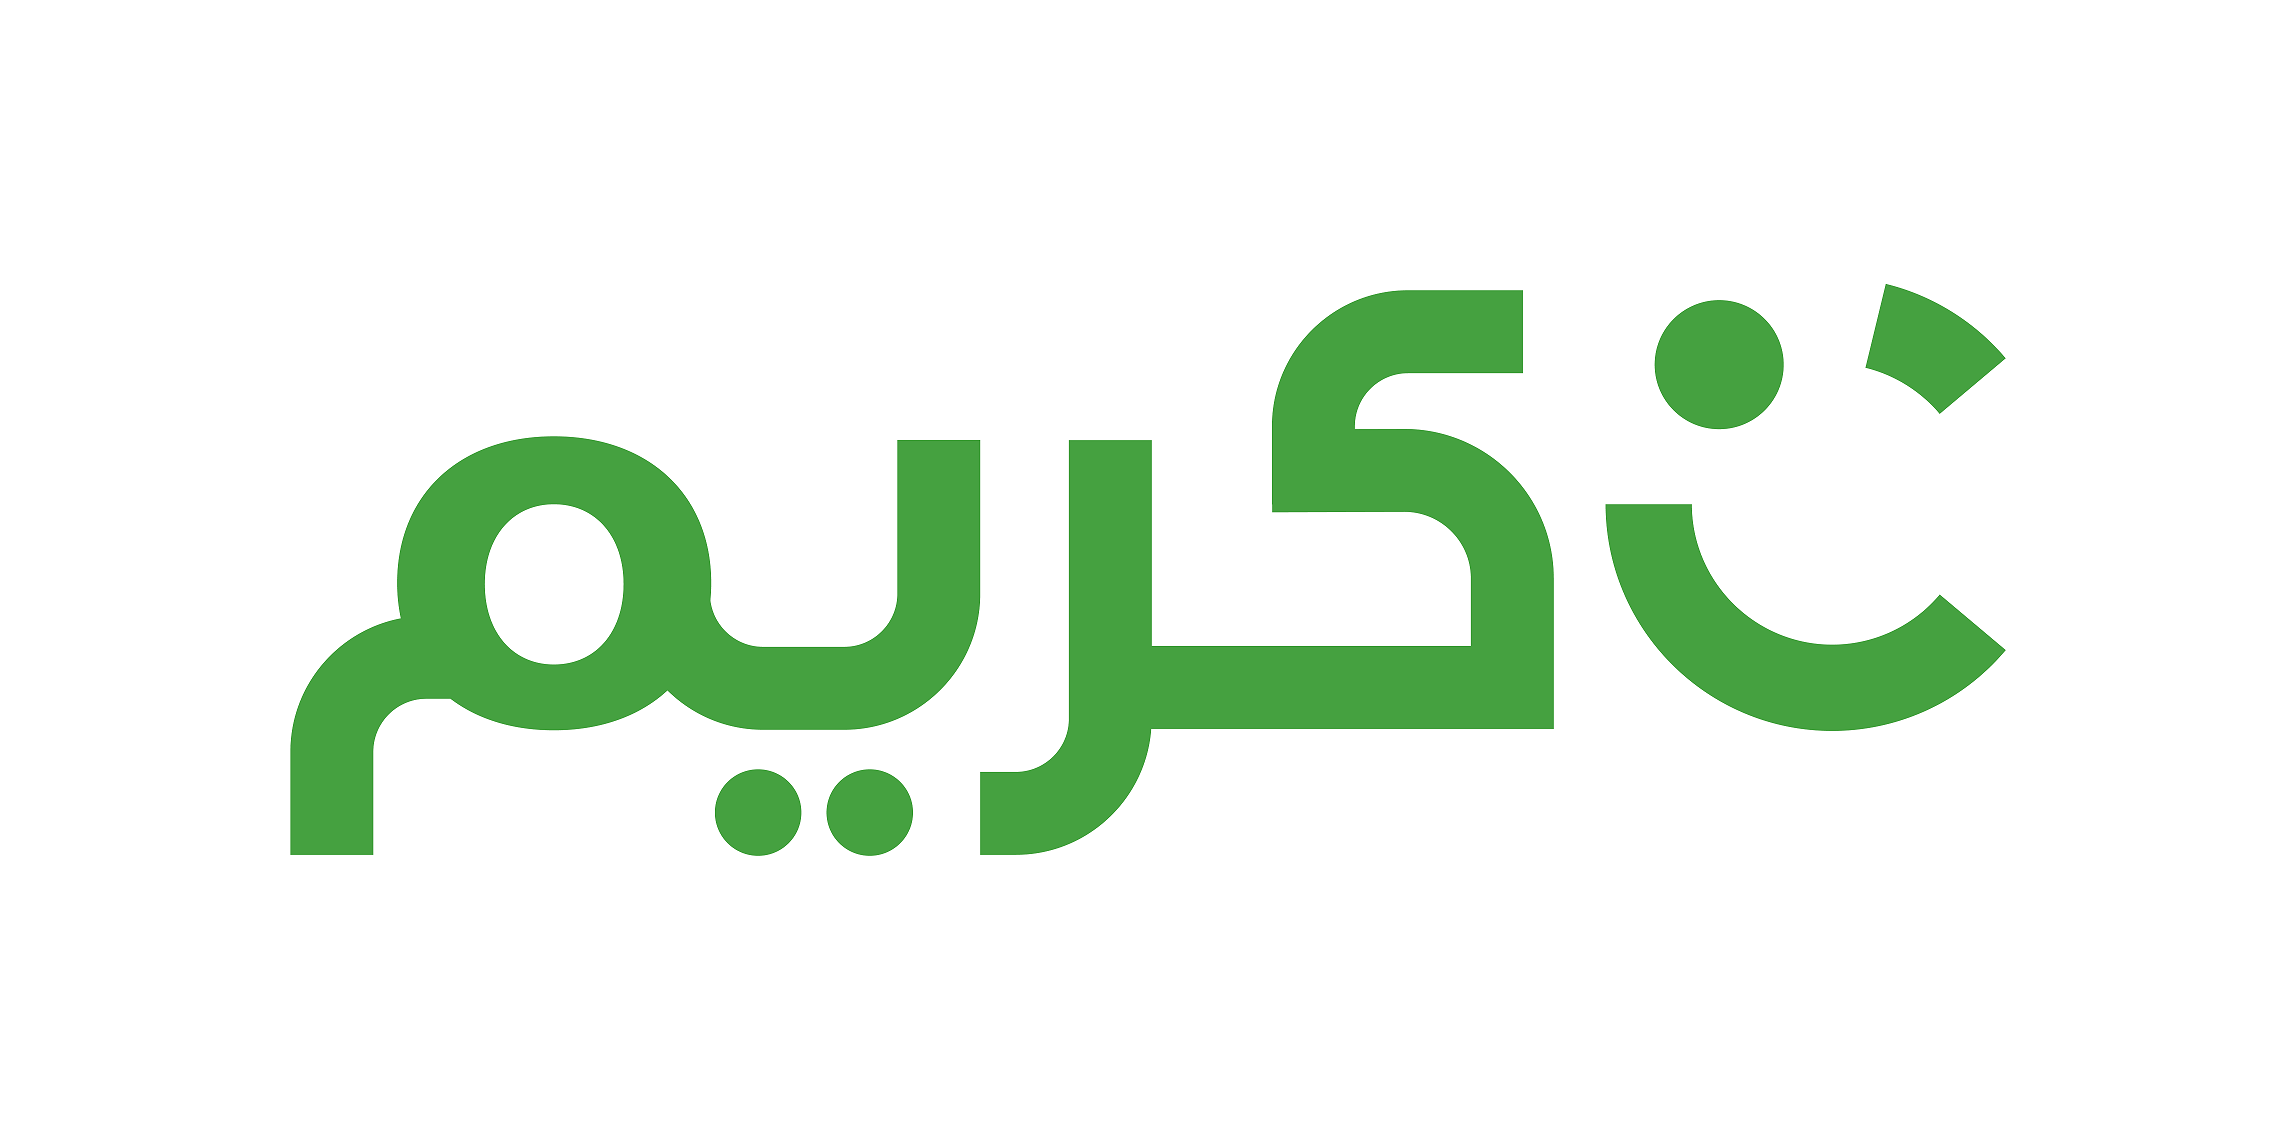 شركة كريم توسع نطاق خدماتها وتطلق منصة كريم ناو لخدمات التوصيل ابتداءً بخدمات توصيل الطعام في دبي وجدة